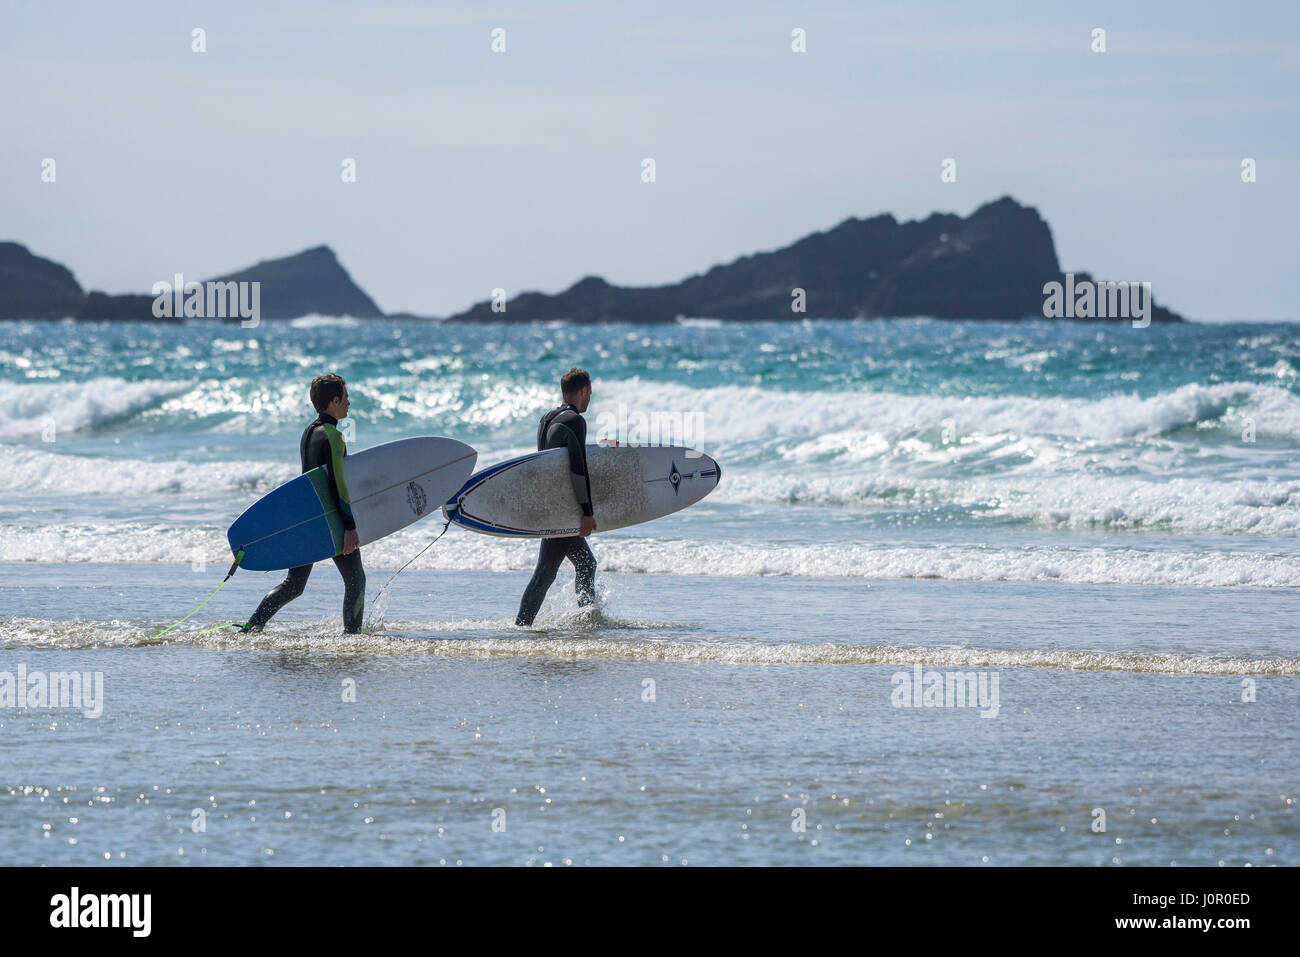 UK surf plage de Fistral Newquay Surfers marcher dans la mer transportant des planches de surf Watersport tourisme balnéaire Plage Vacances Locations Banque D'Images